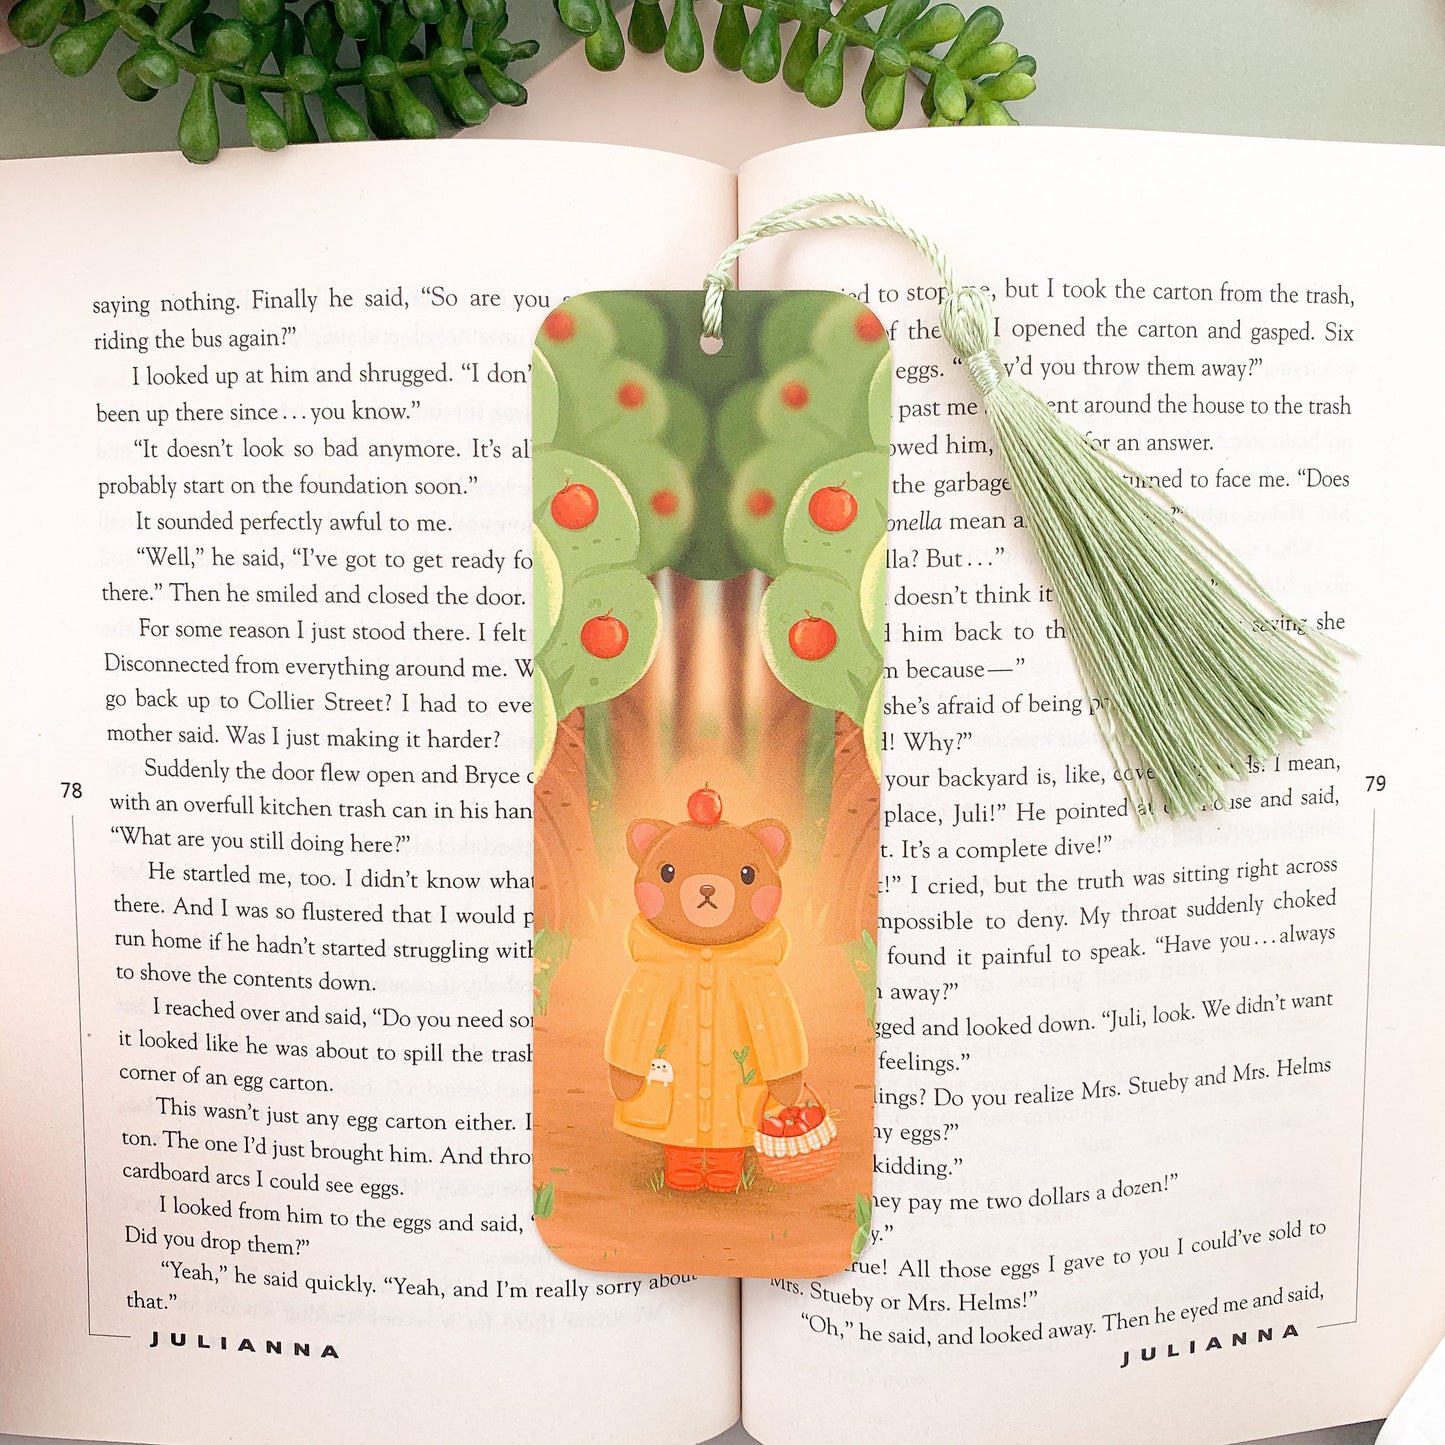 Apple Bear Bookmark